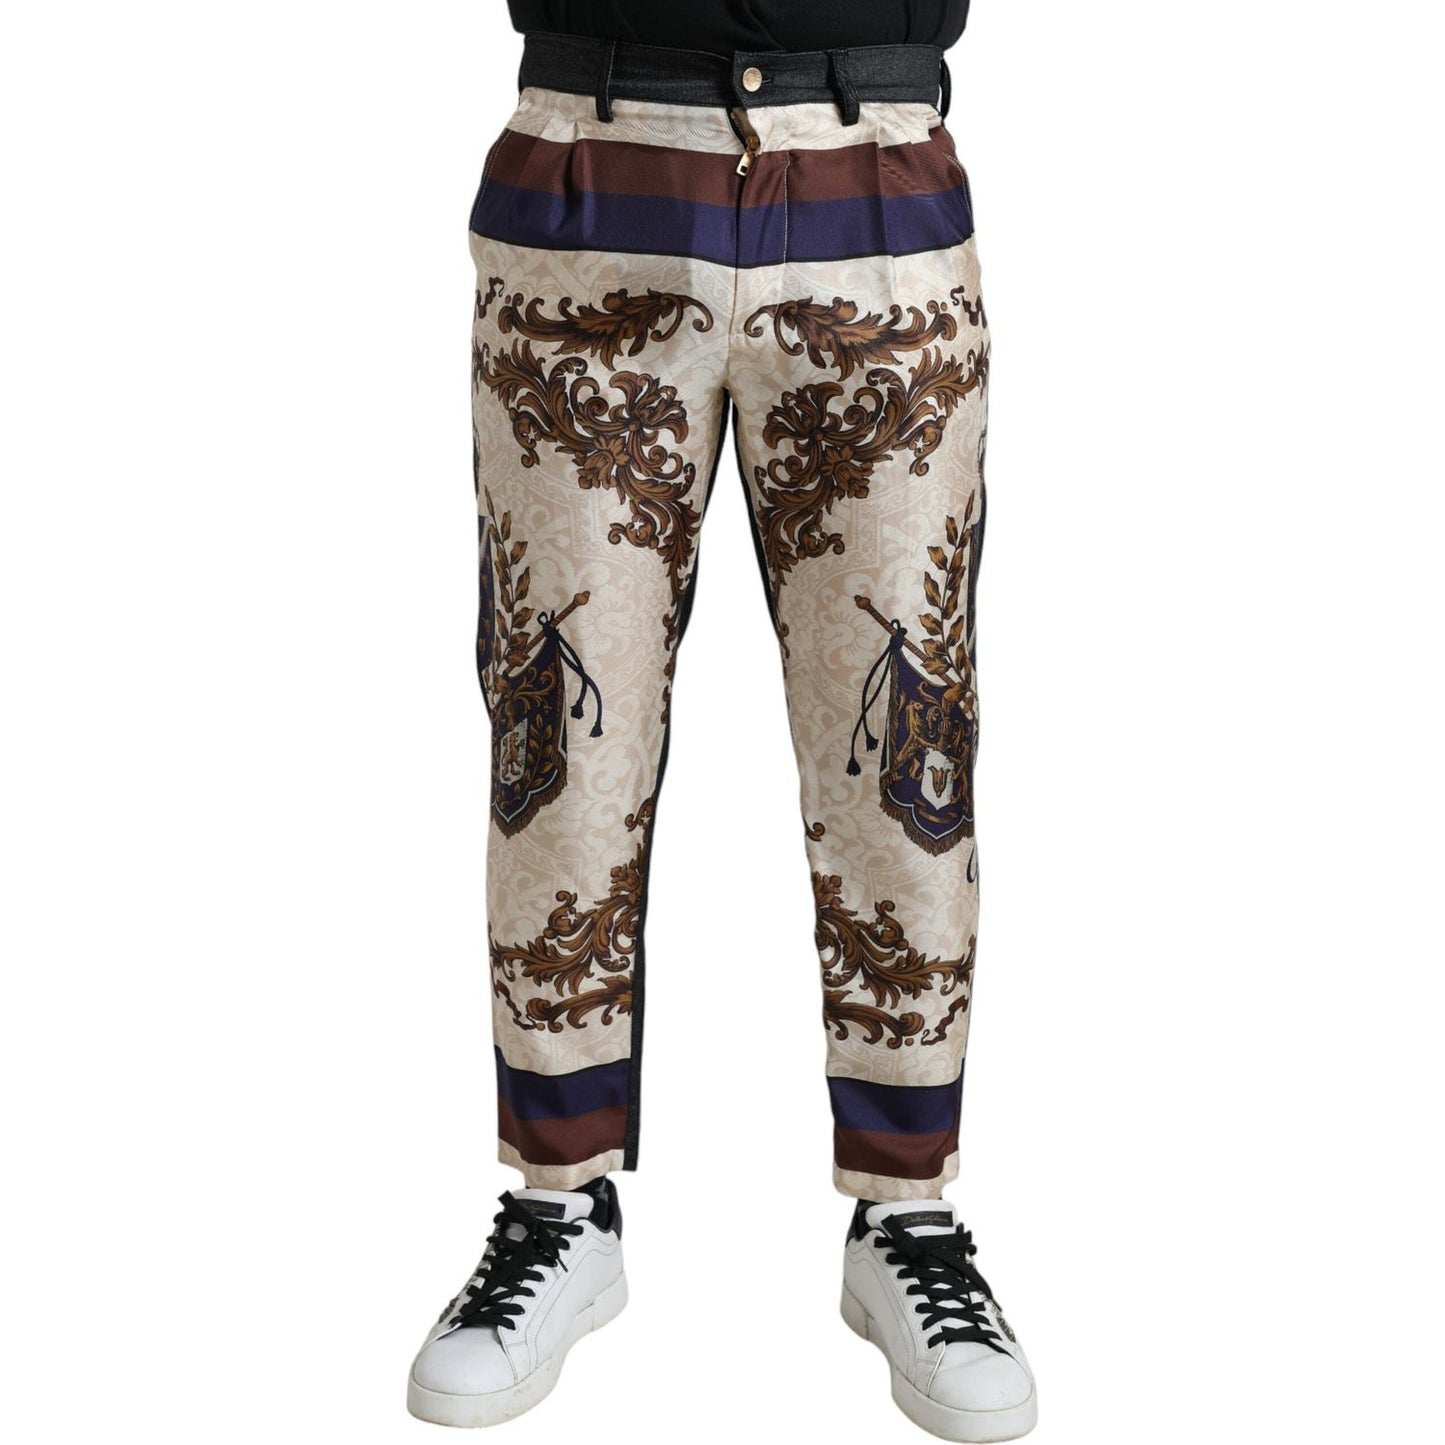 Dolce & Gabbana Elegant Silk Skinny Pants with Heraldic Print multicolor-heraldic-skinny-men-pants